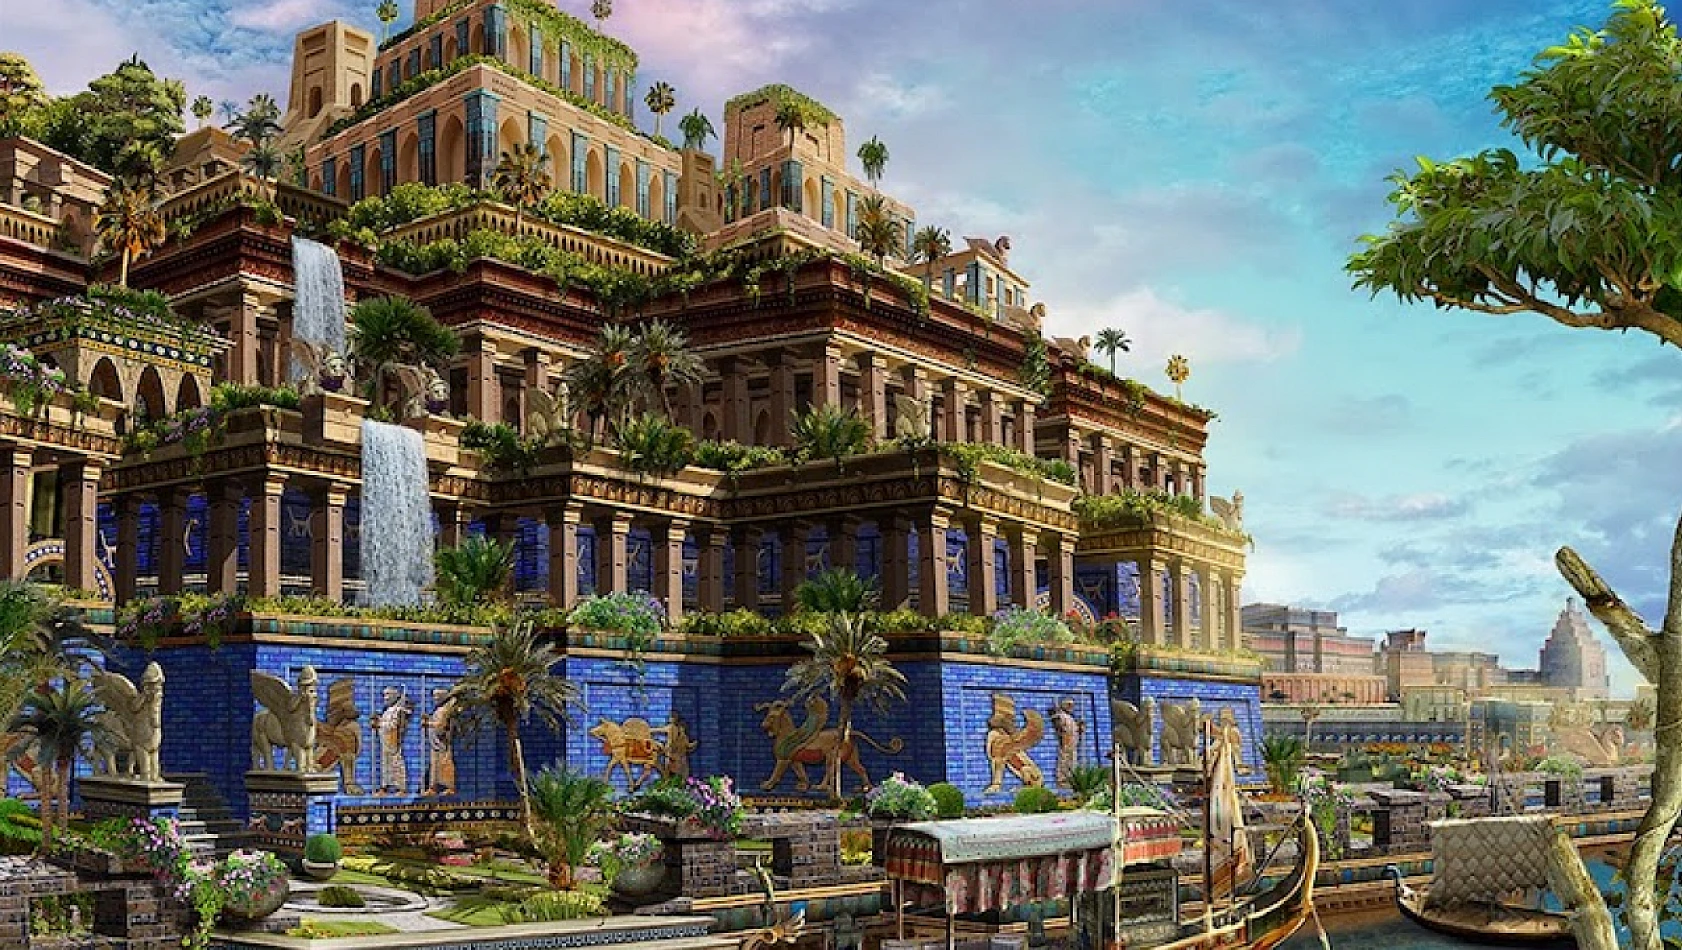 Dünya mirası Babil'in Asma Bahçeleri hakkında bilmedikleriniz!